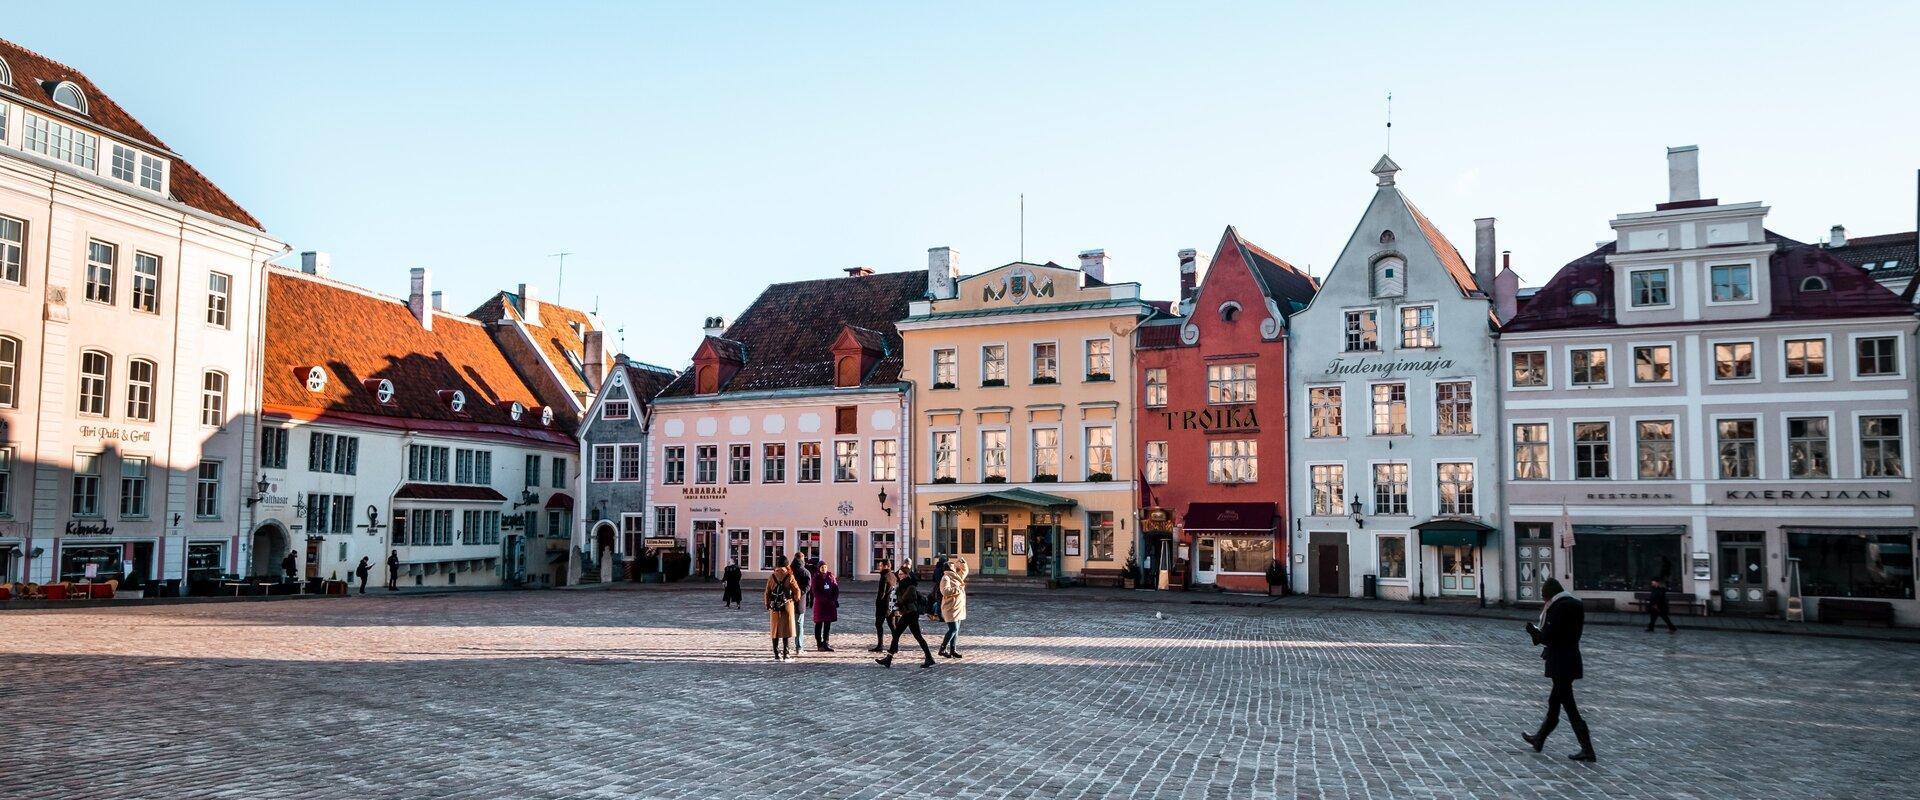 Tallinna Raekoja plats